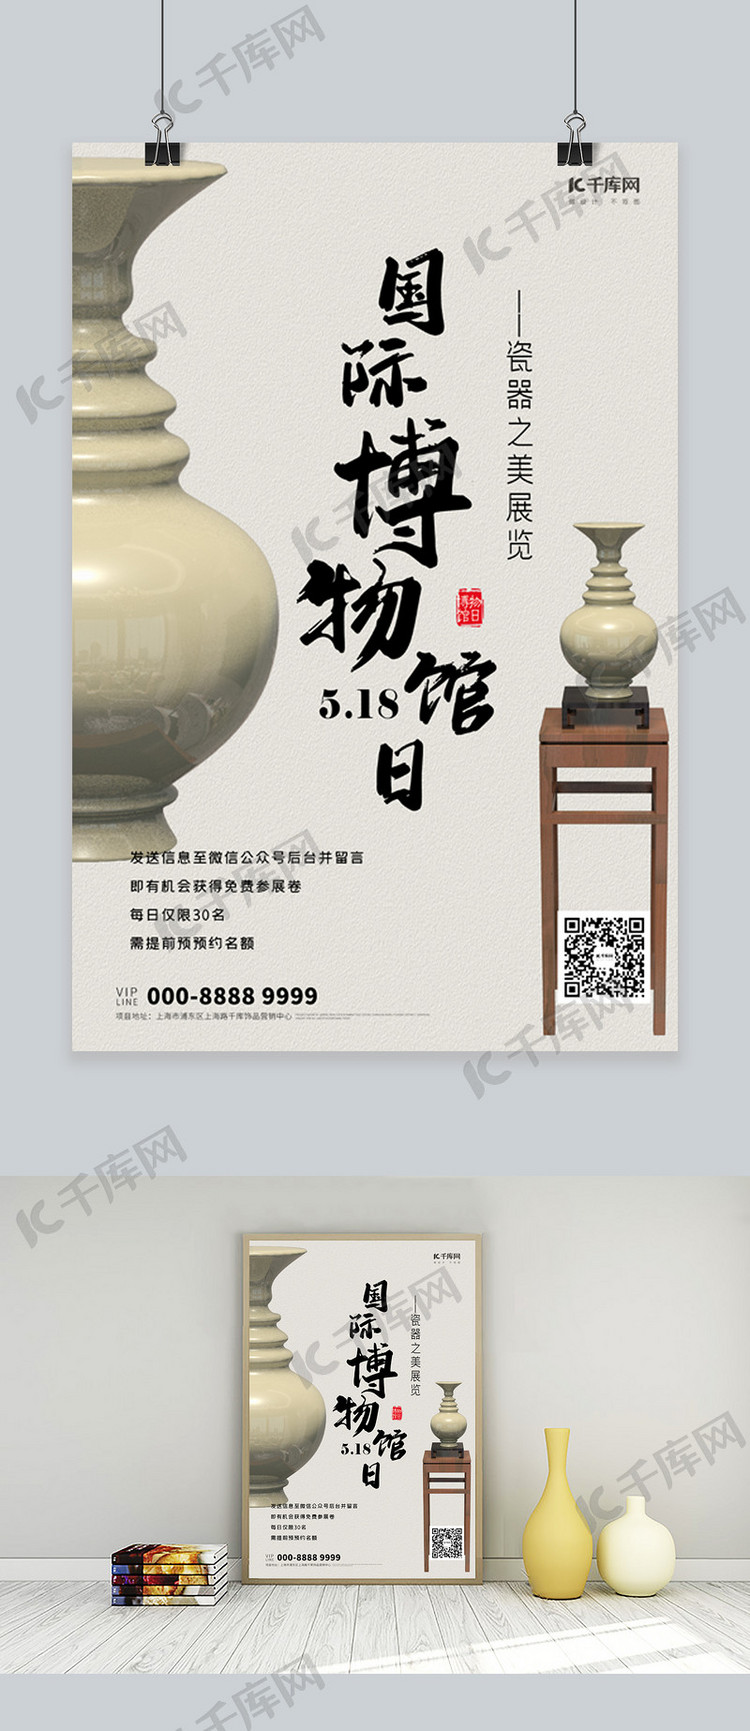 瓷器展览国际博物馆日创意海报瓷器黄的中国风海报